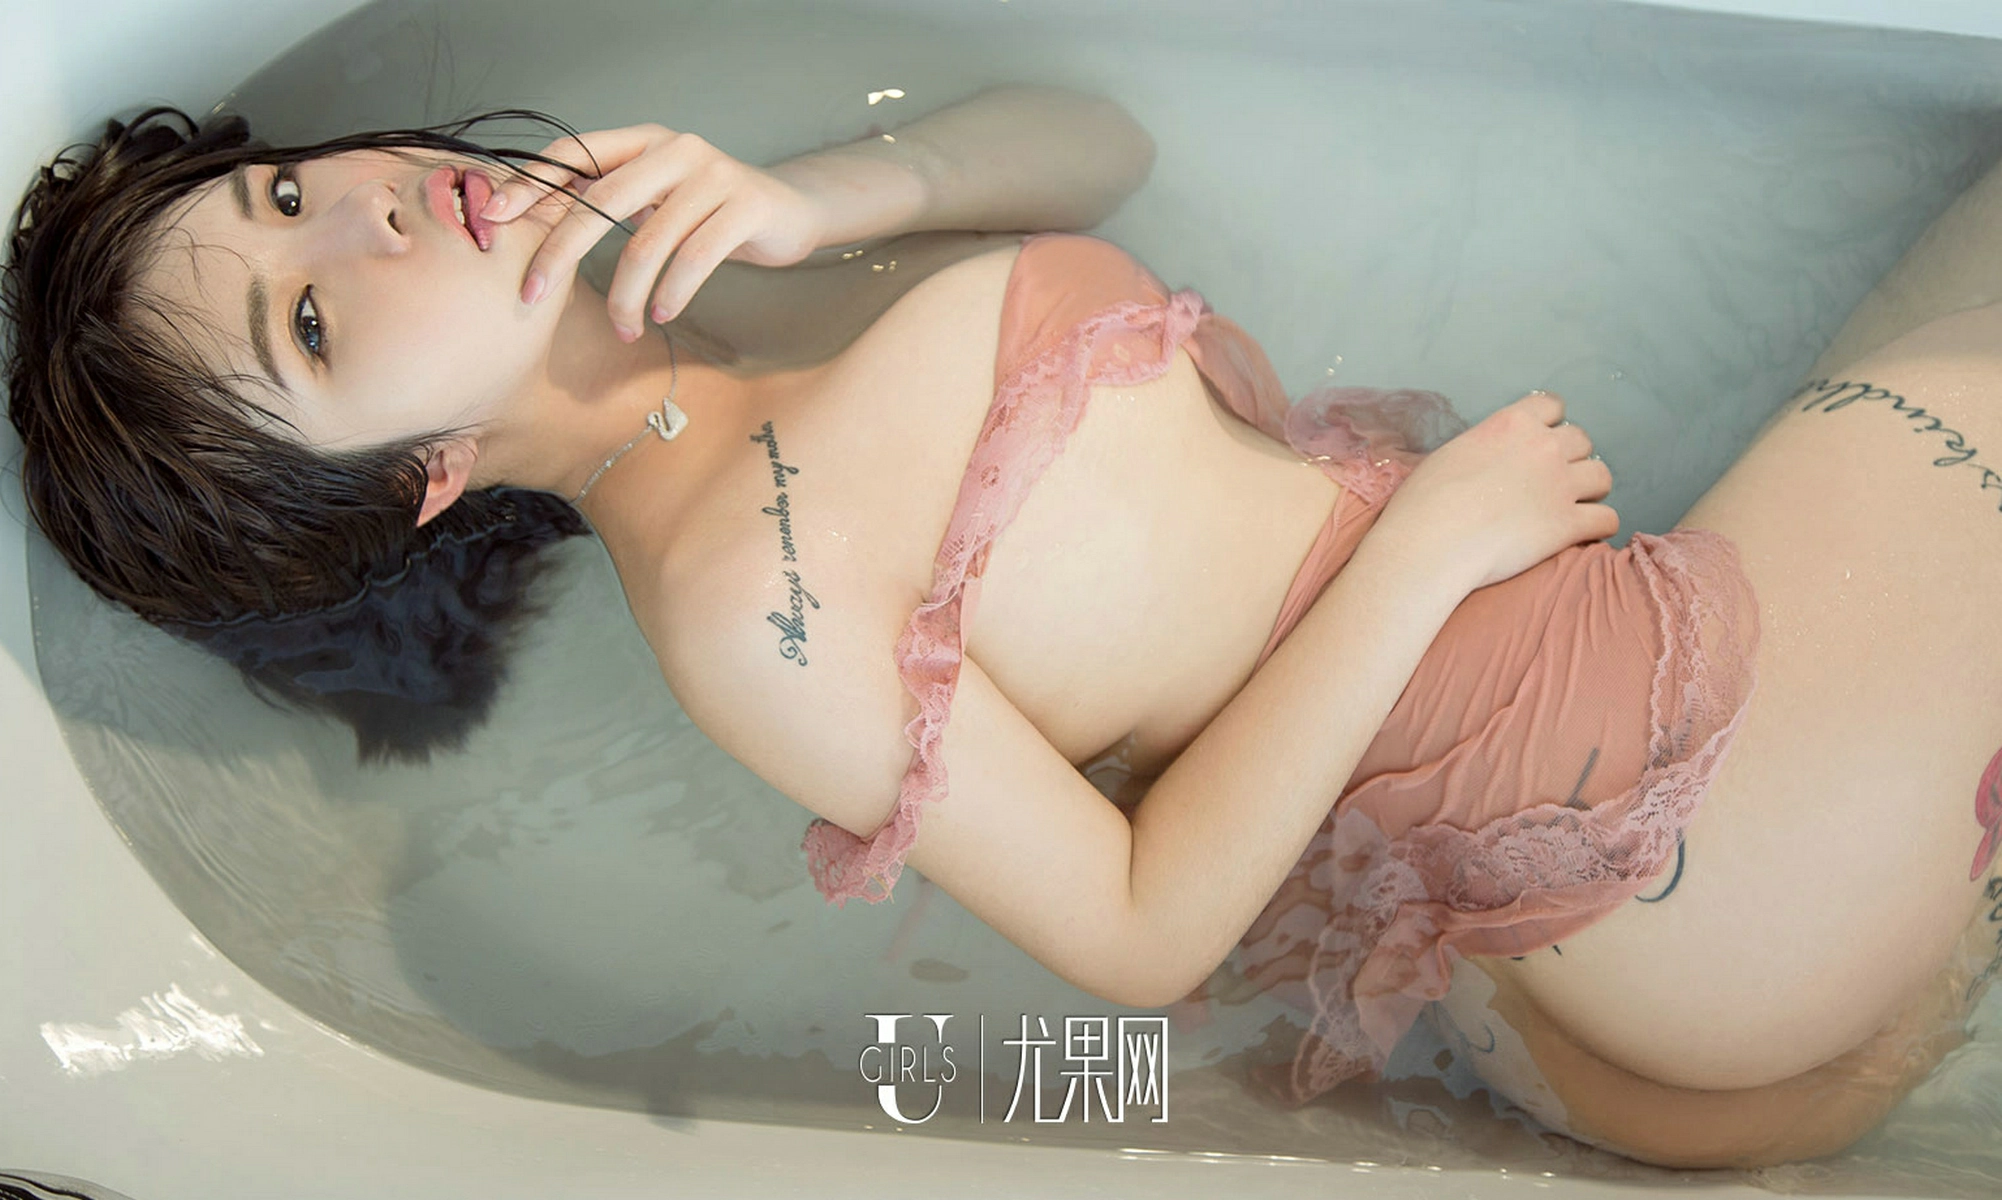 [爱尤物]2017 NO.666 不良少女 Jasmine JK制服与粉色透视情趣睡衣性感写真集,0033